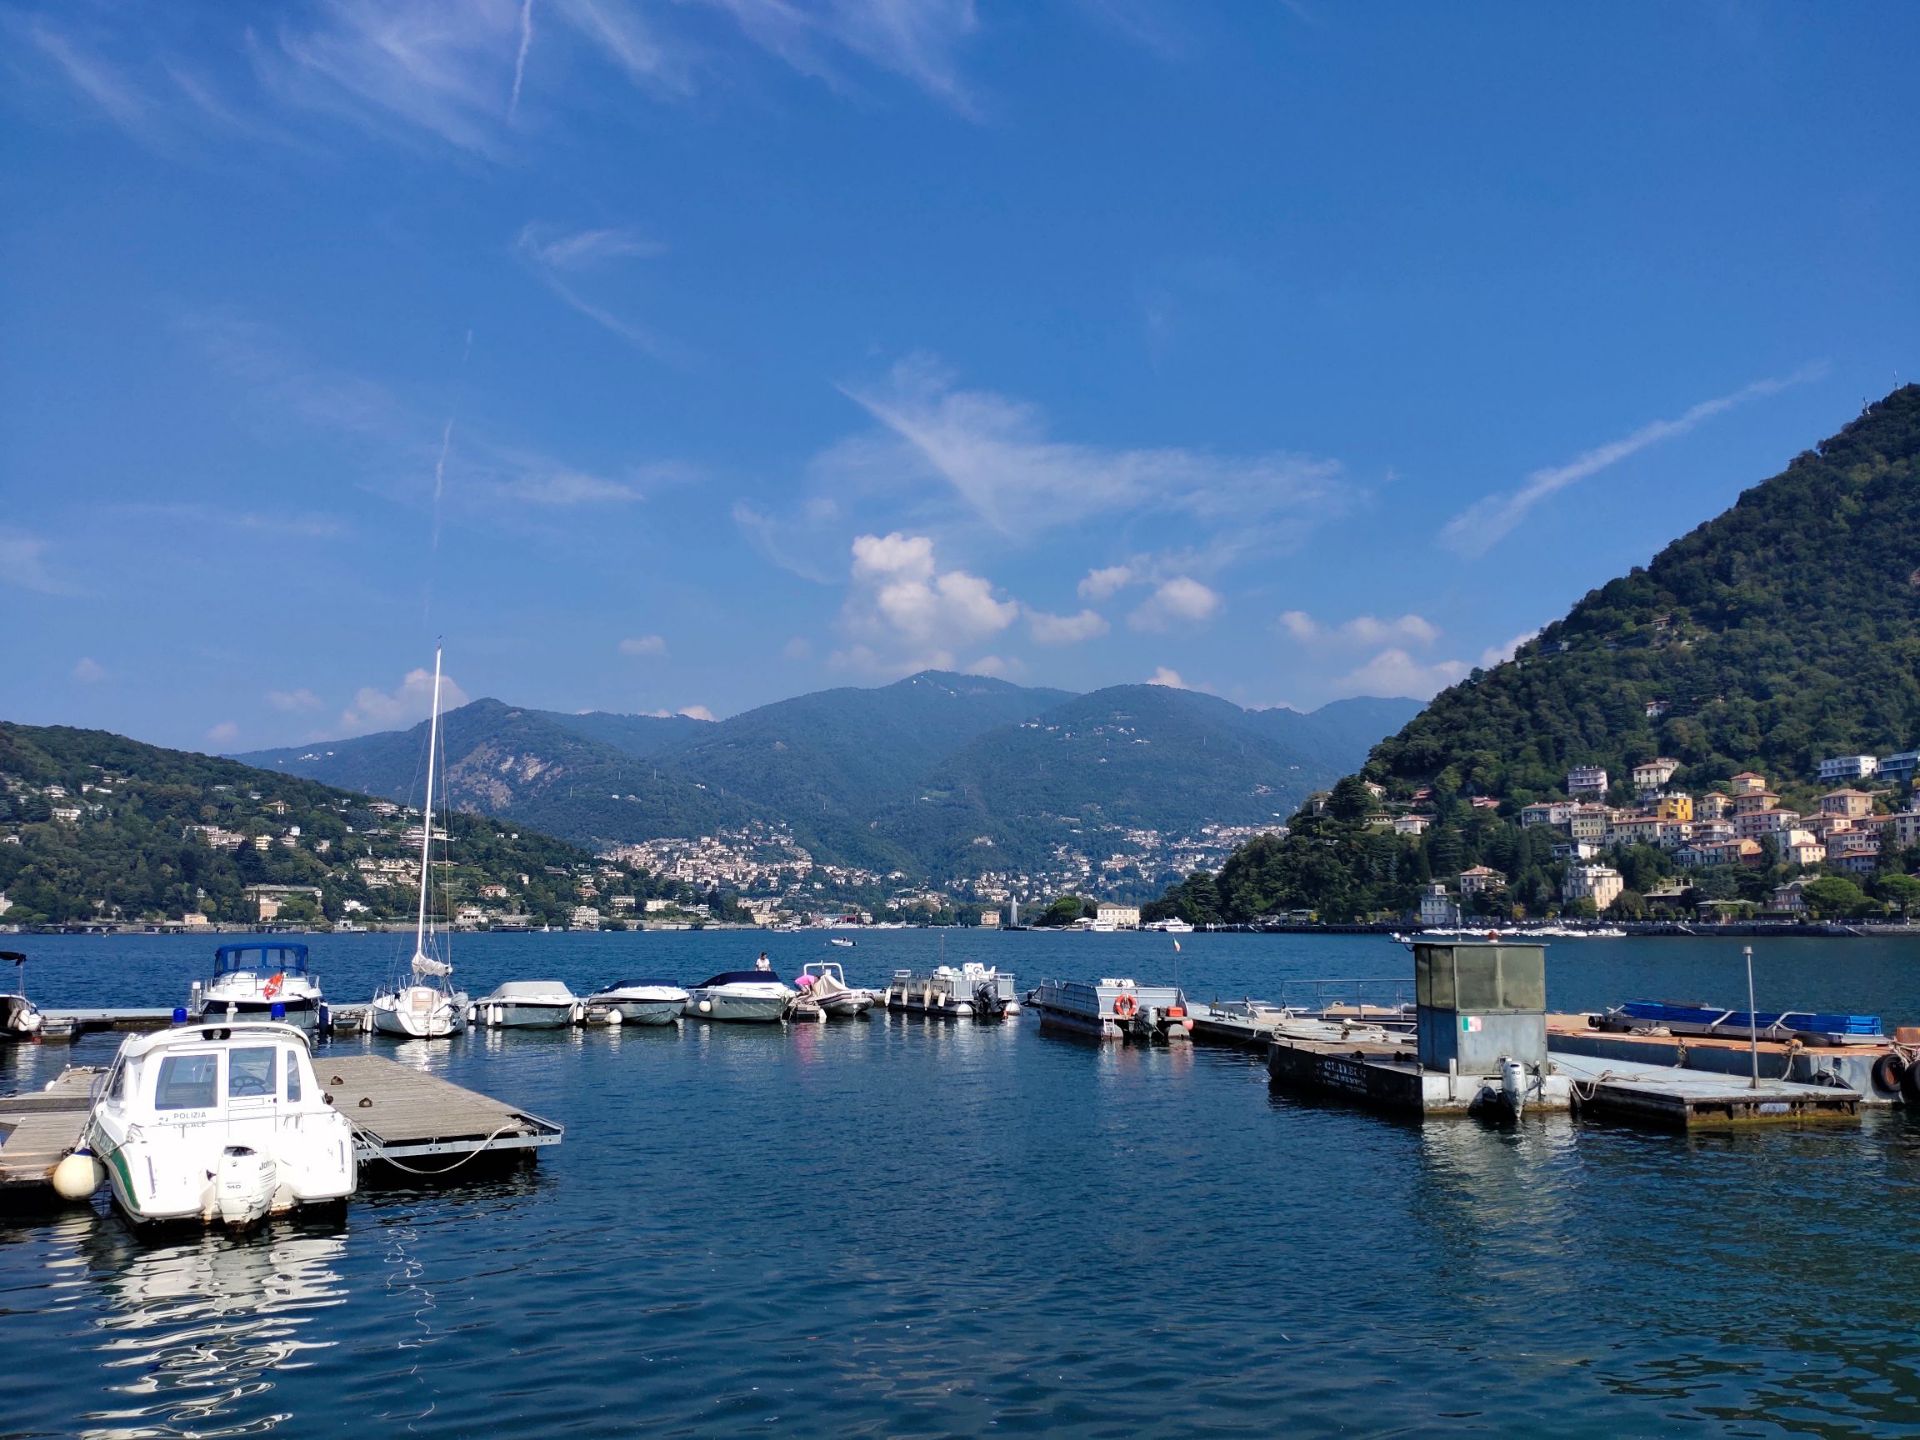 科莫湖(Como), 意大利北部阿尔卑斯山山区著名湖泊之一，是其中最具诗意的。岸边的许多地方都是峭壁